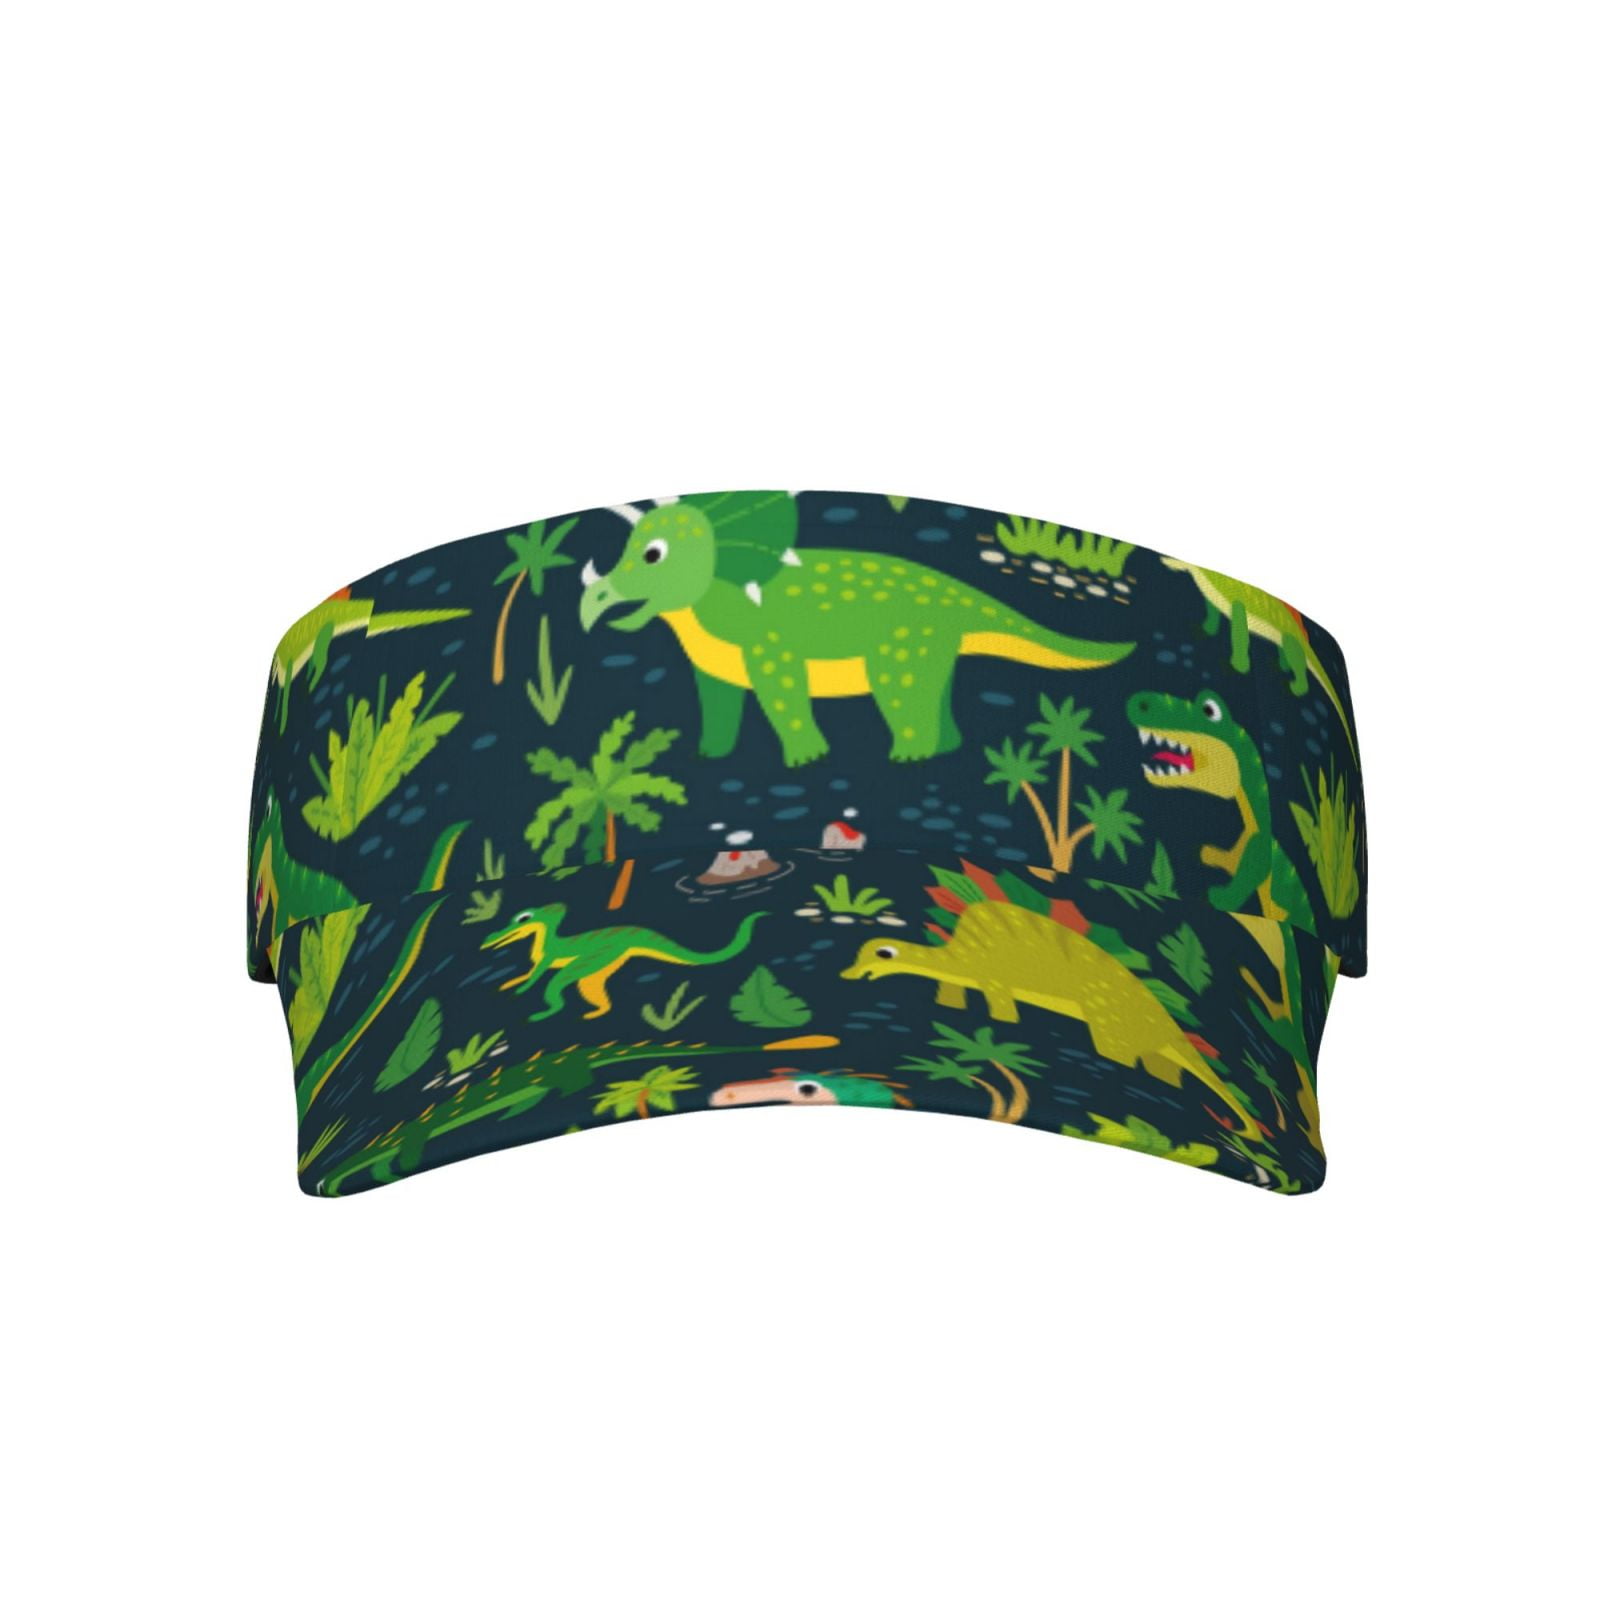 Easygdp Dinosaurs and Flowers Stretchy Visor - Unisex Visor Hat for Men ...